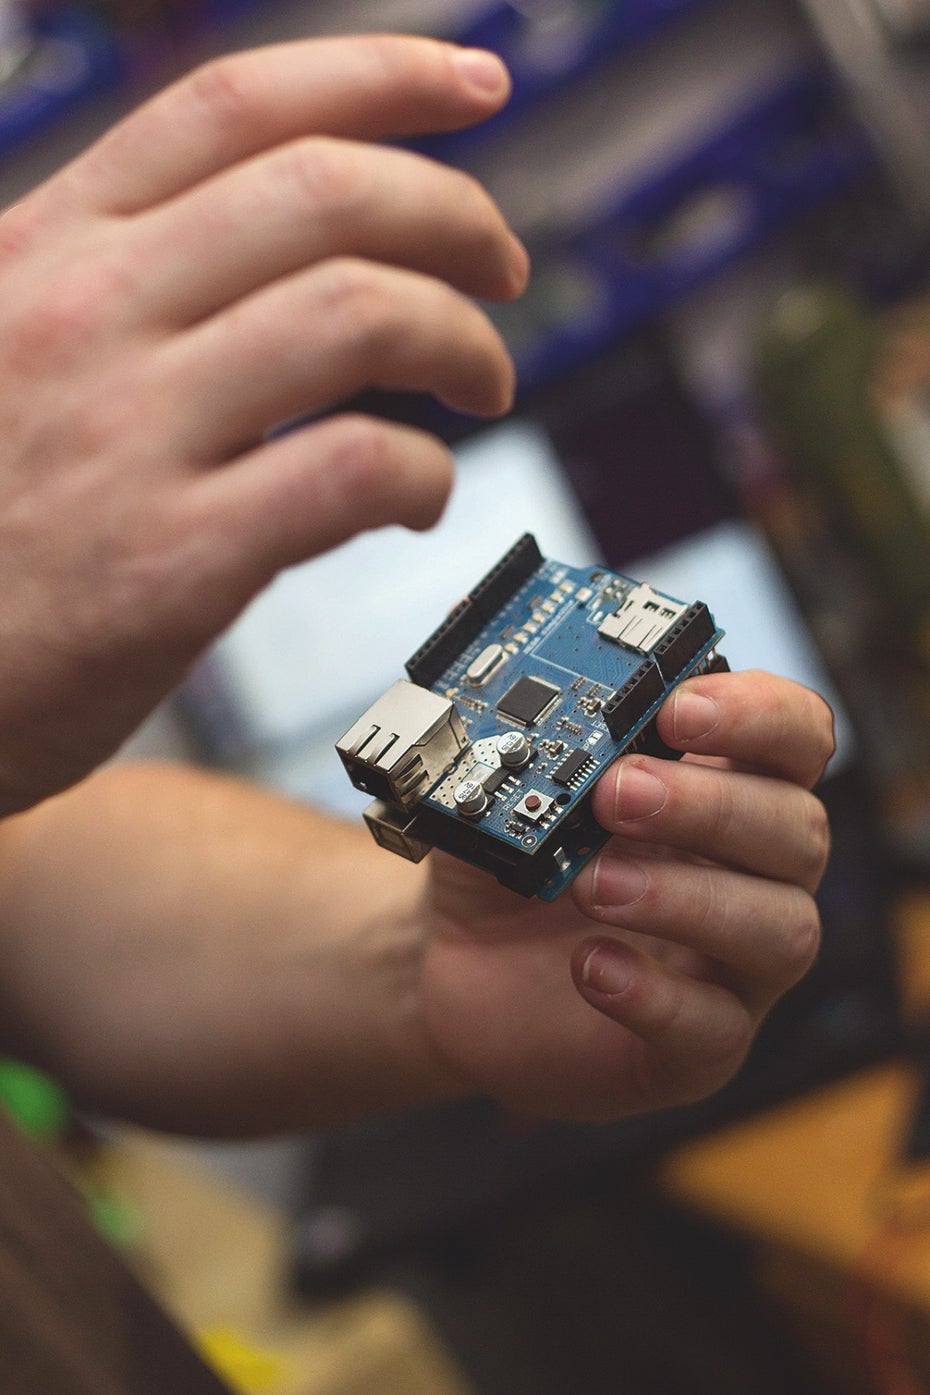 Ein Projekt von Mario Lukas: Ein Arduino-Board mit Netzwerk-Schnittstelle. (Foto: Jessica Borchardt)